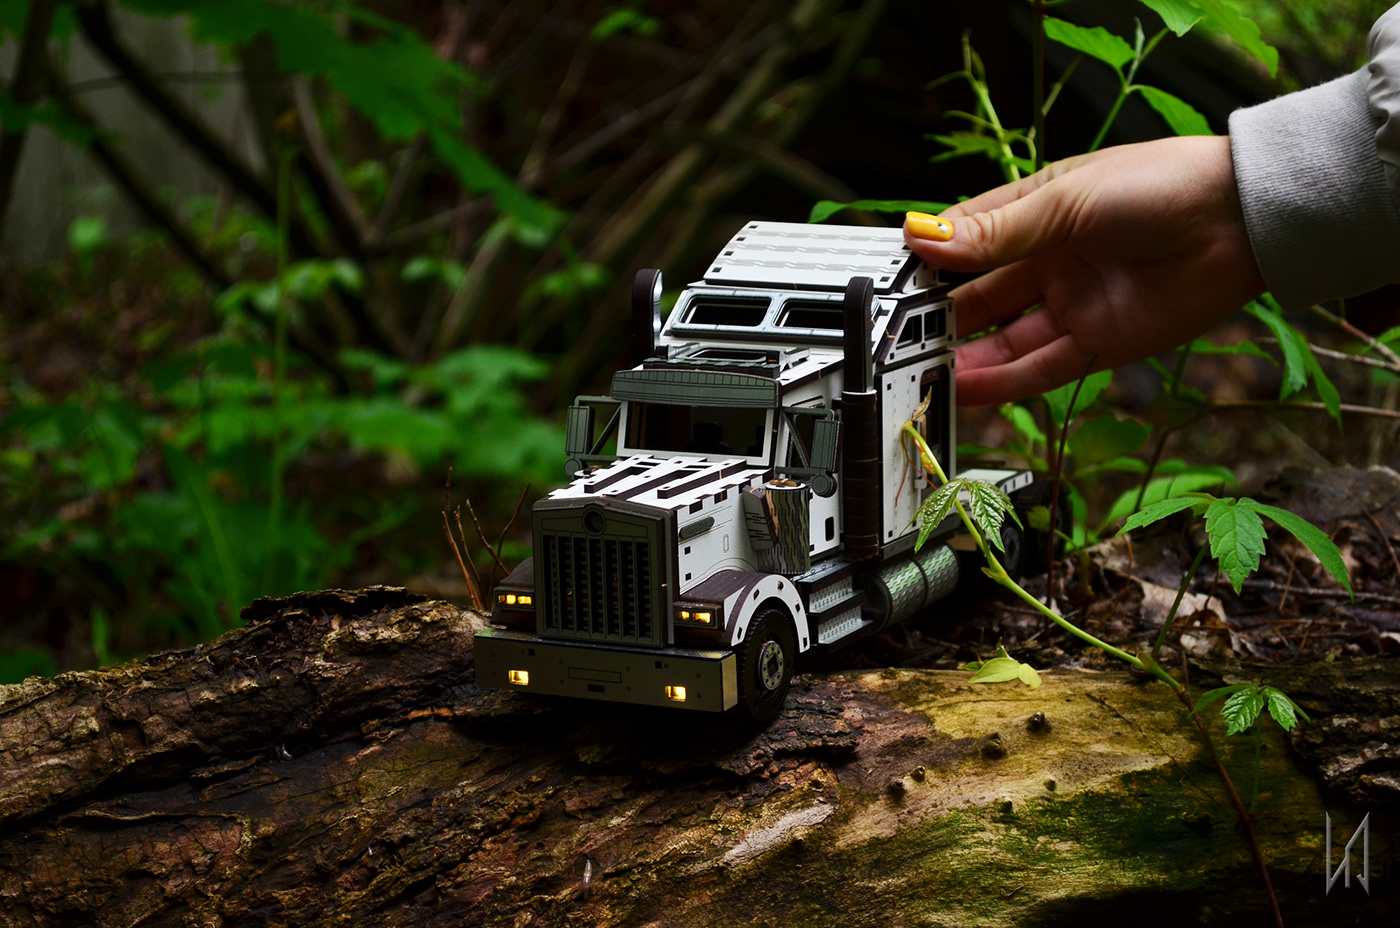 3D Puzzle construction laser cut model kit car Truck Vehicle wood wooden